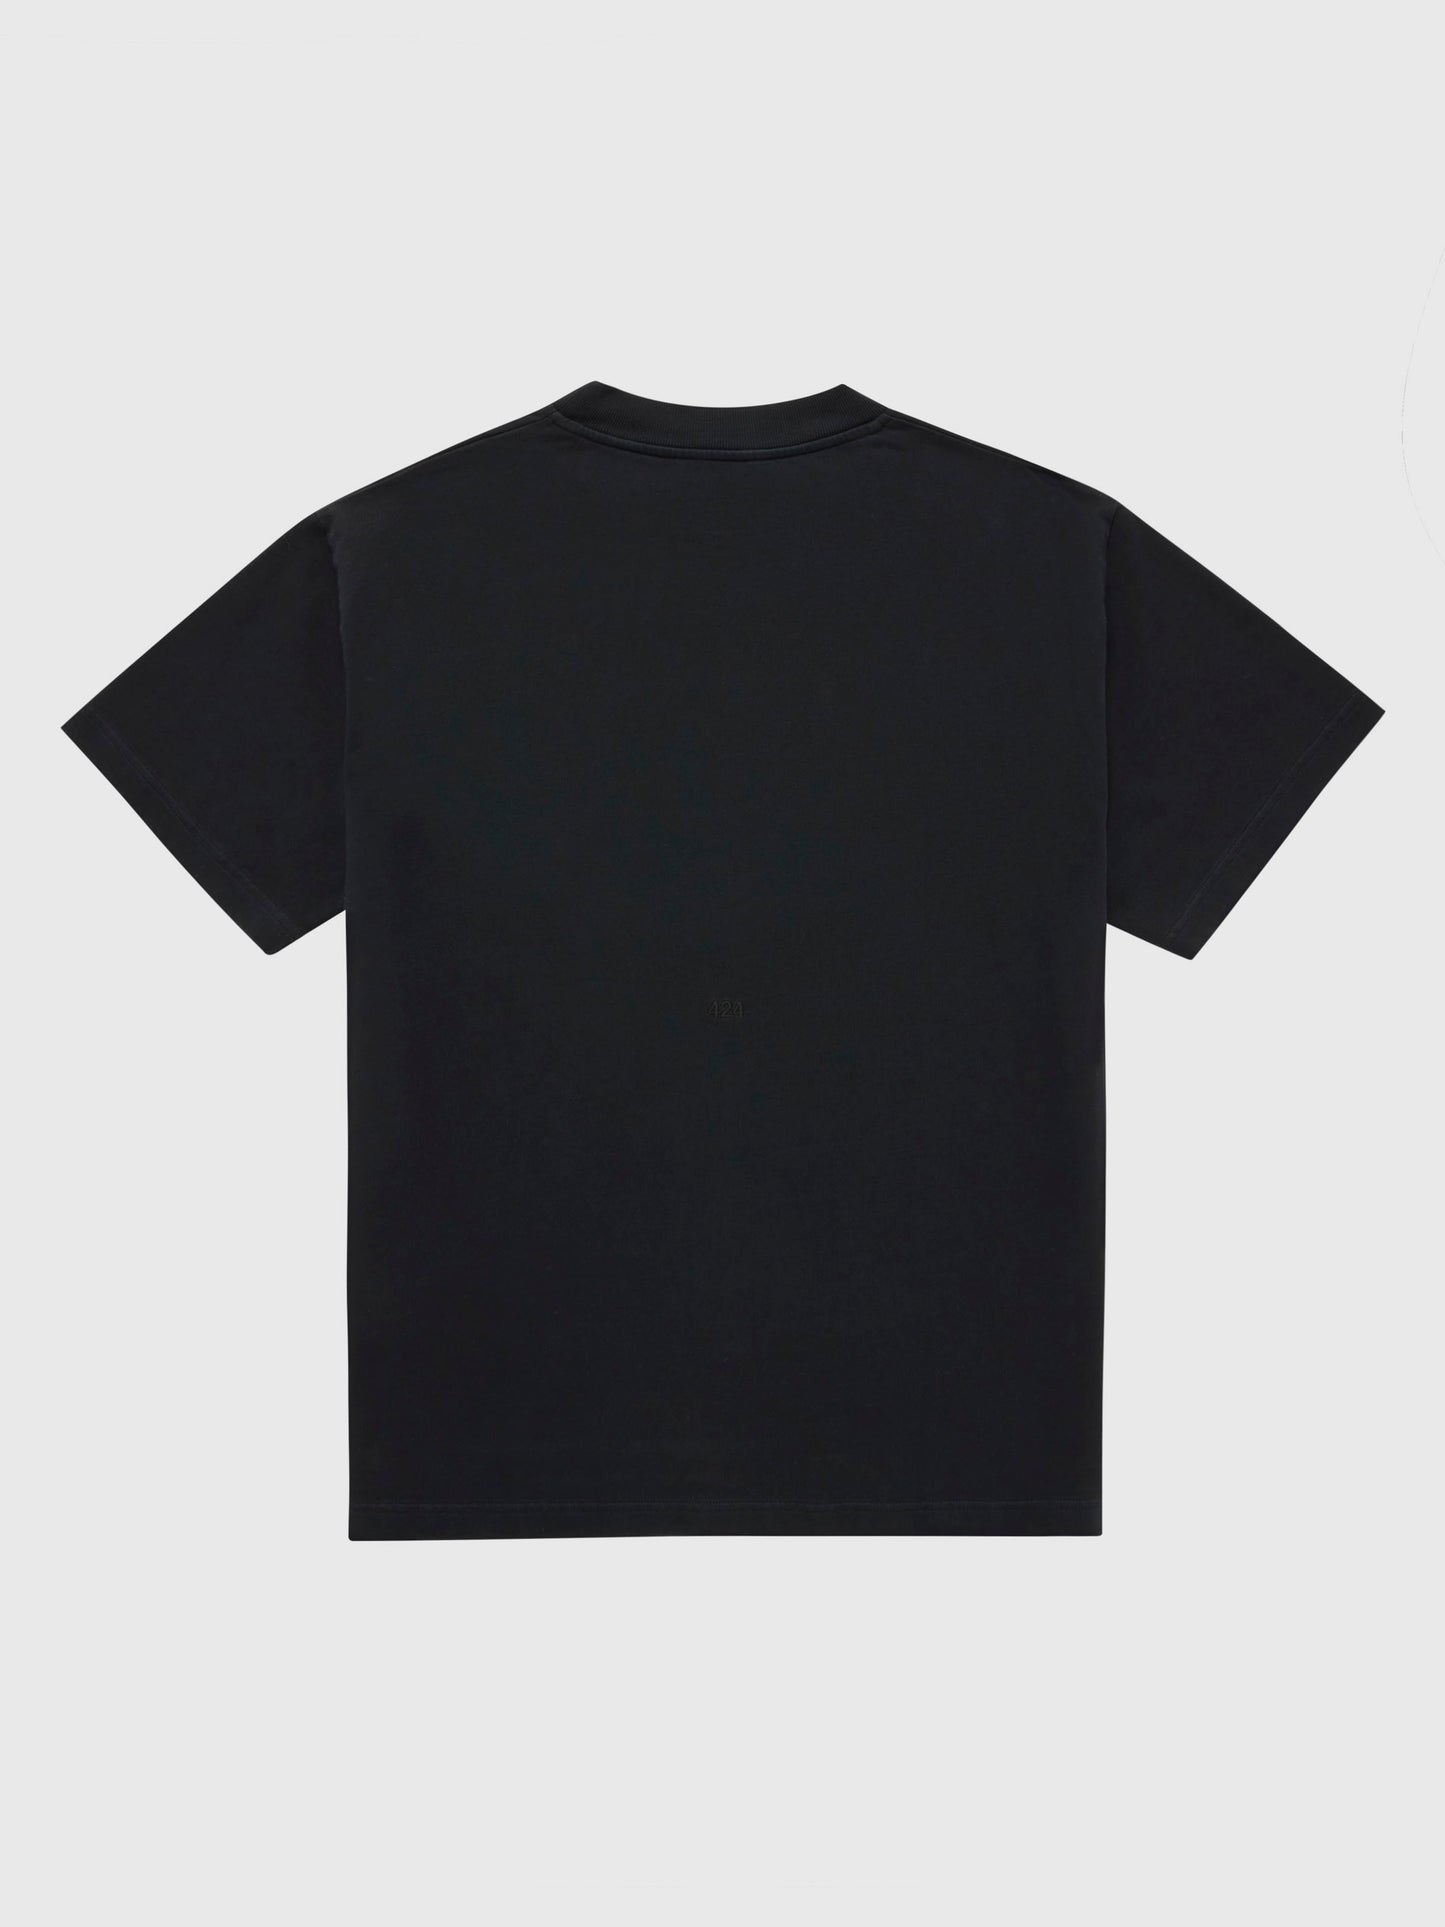 Alias T-Shirt in Black